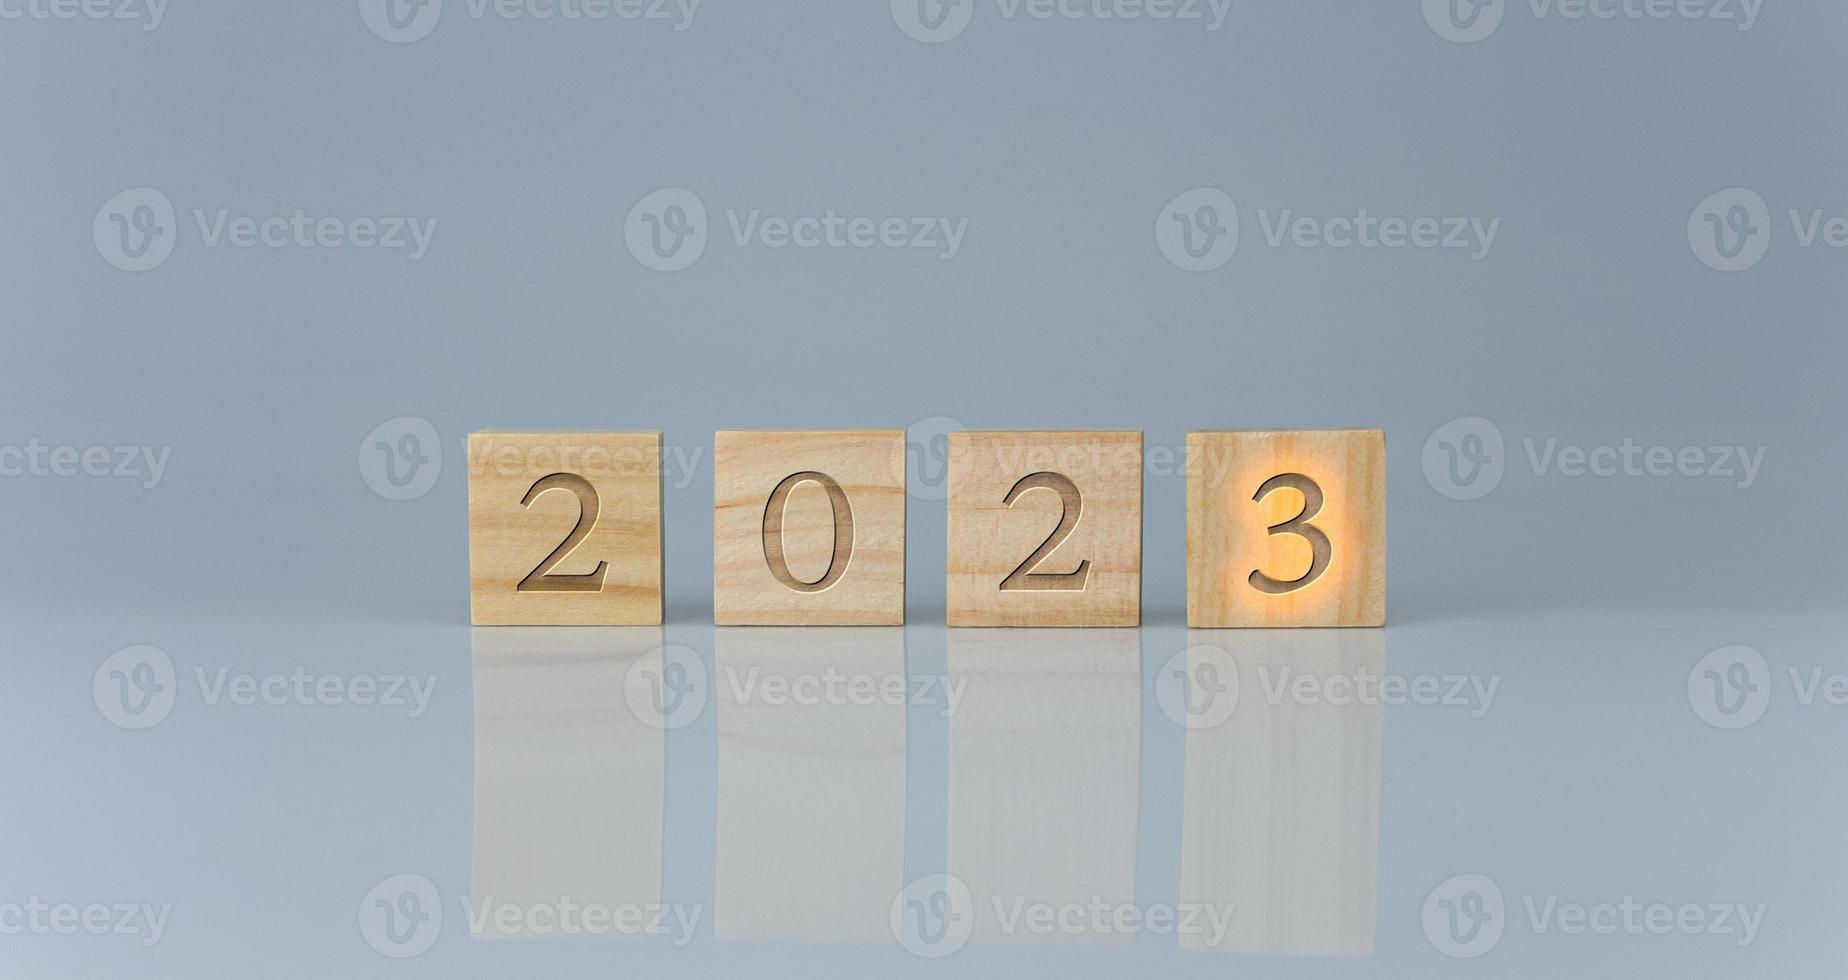 houten blokken bekleed omhoog met de brieven 2023. vertegenwoordigt de doel instelling voor 2023, de concept van een begin. financieel planning ontwikkeling strategie bedrijf doel instelling foto